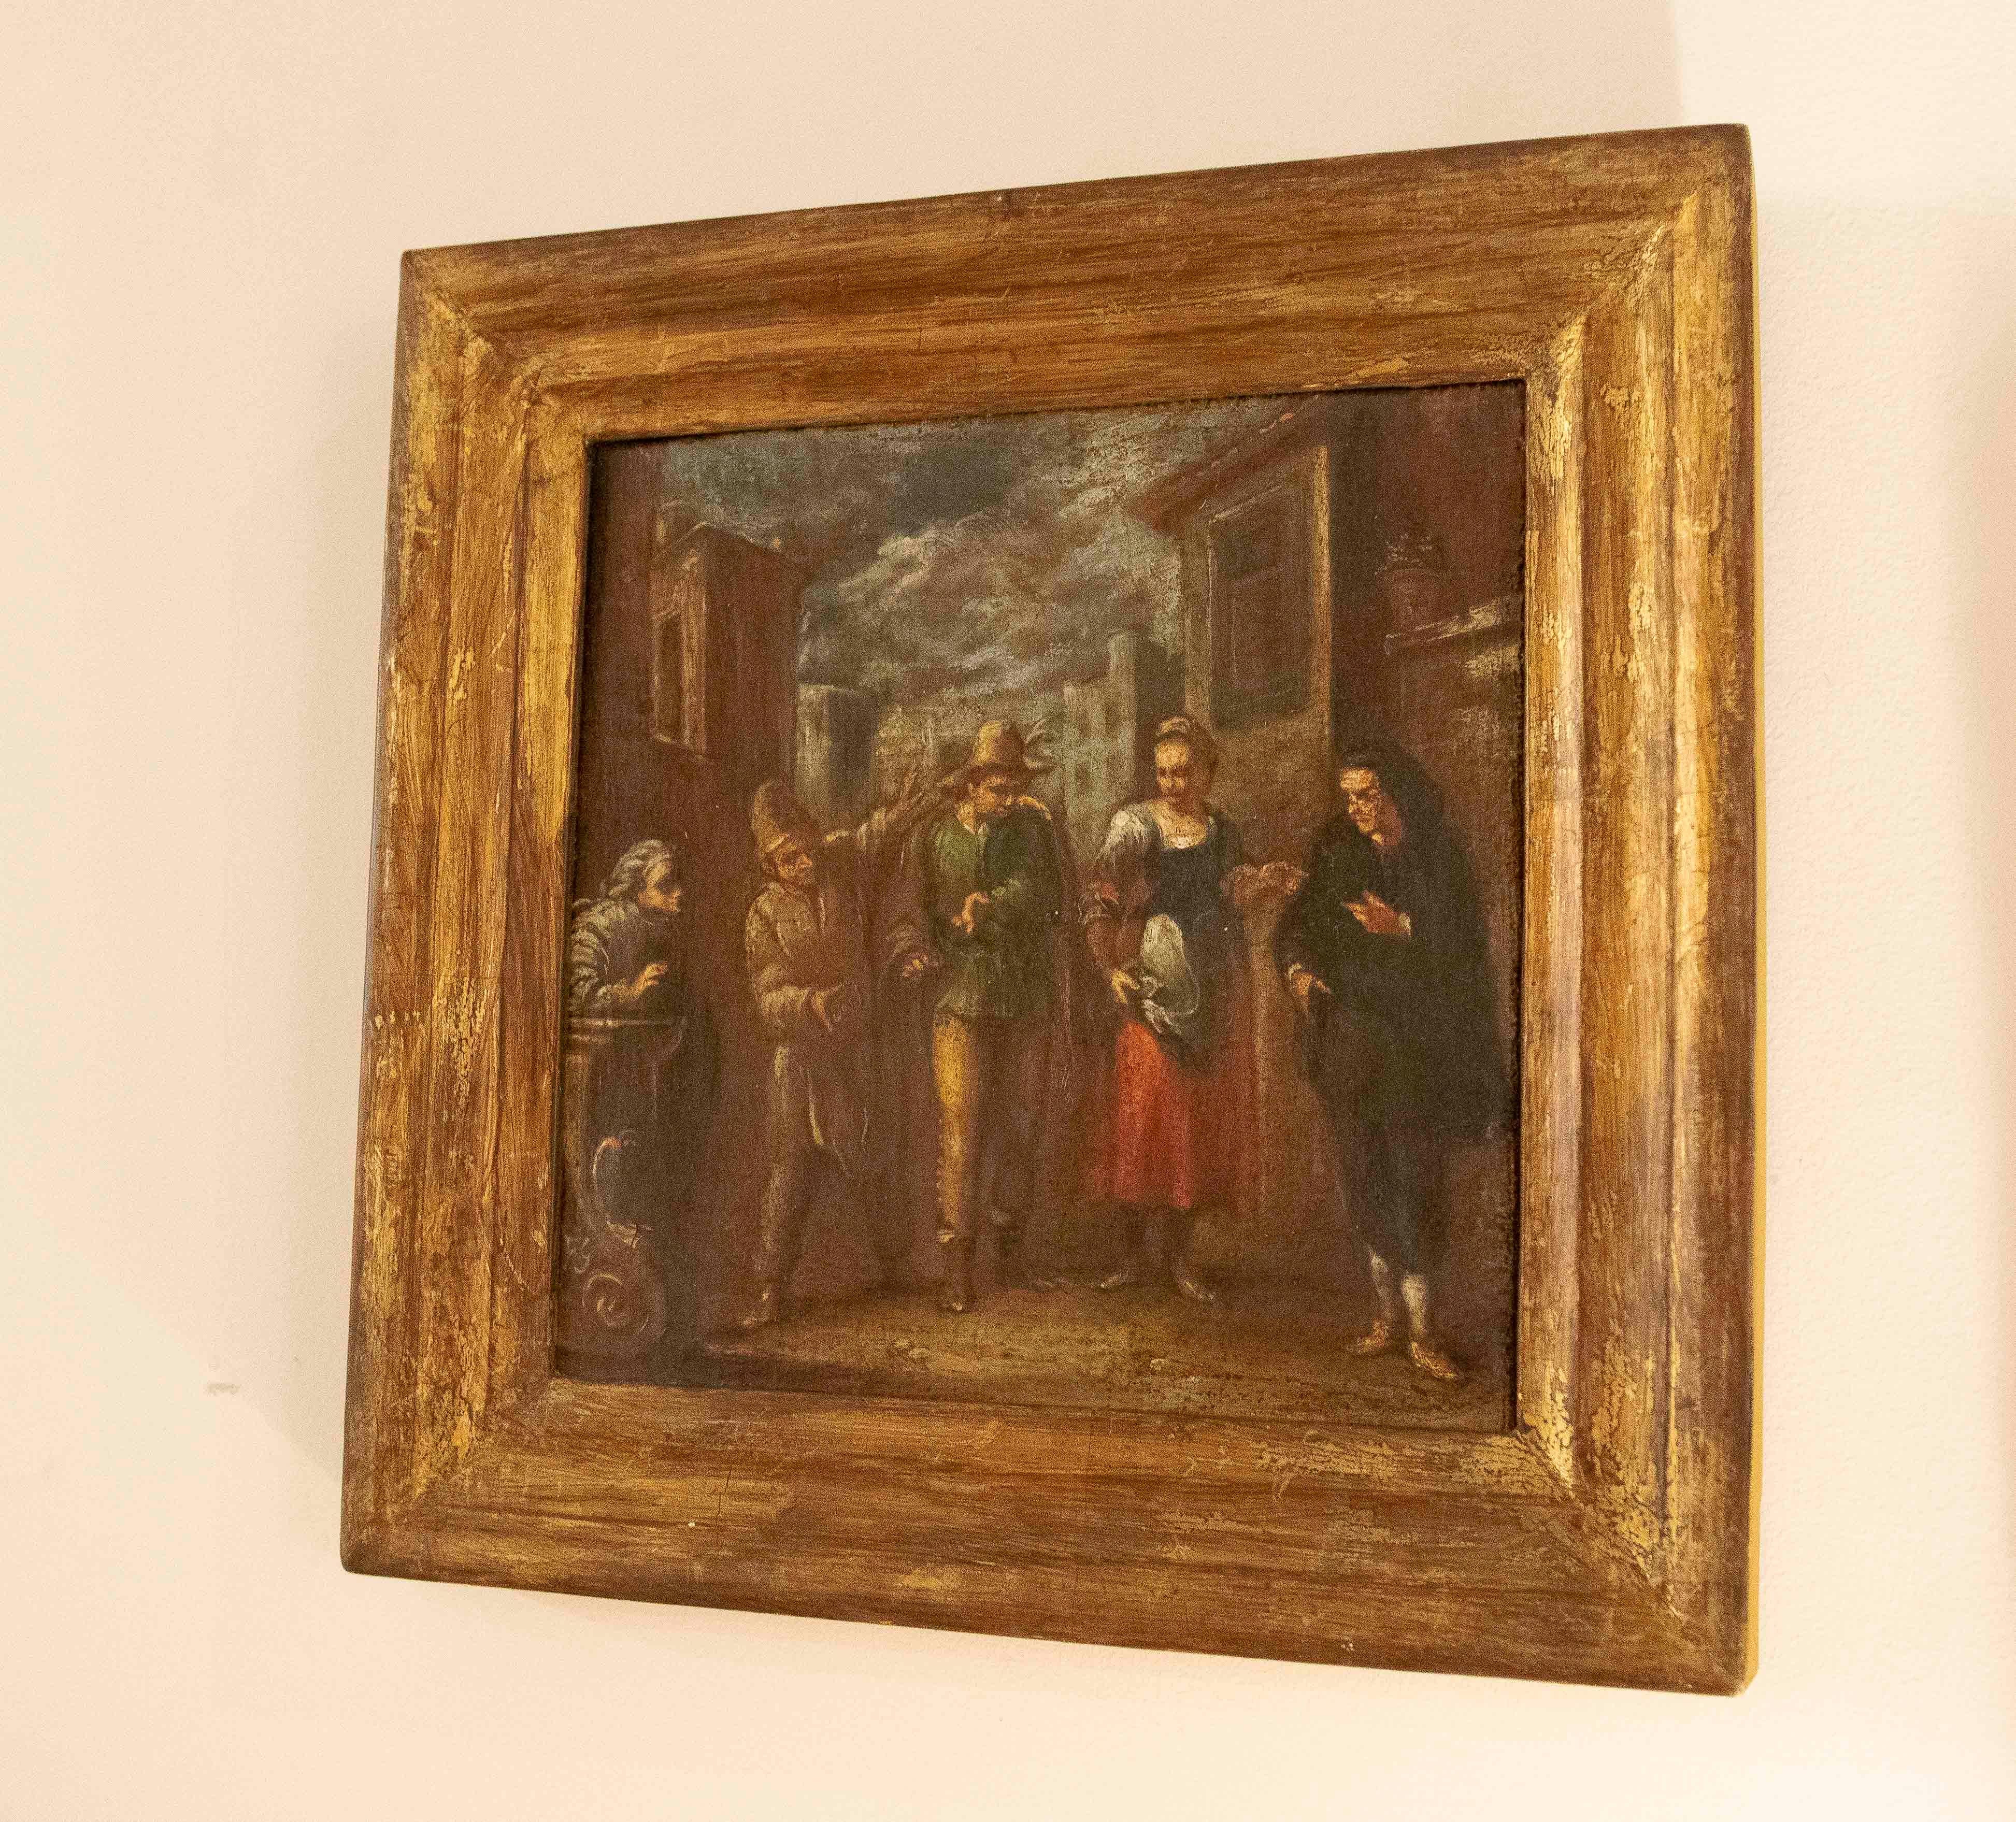 Tableau avec des personnages peints à l'huile sur toile du 18e siècle.  Le tableau représente des personnages dans une scène de rue quotidienne, le cadre est en bois doré, au dos il y a une curiosité, c'est qu'il y a une couronne et des initiales.